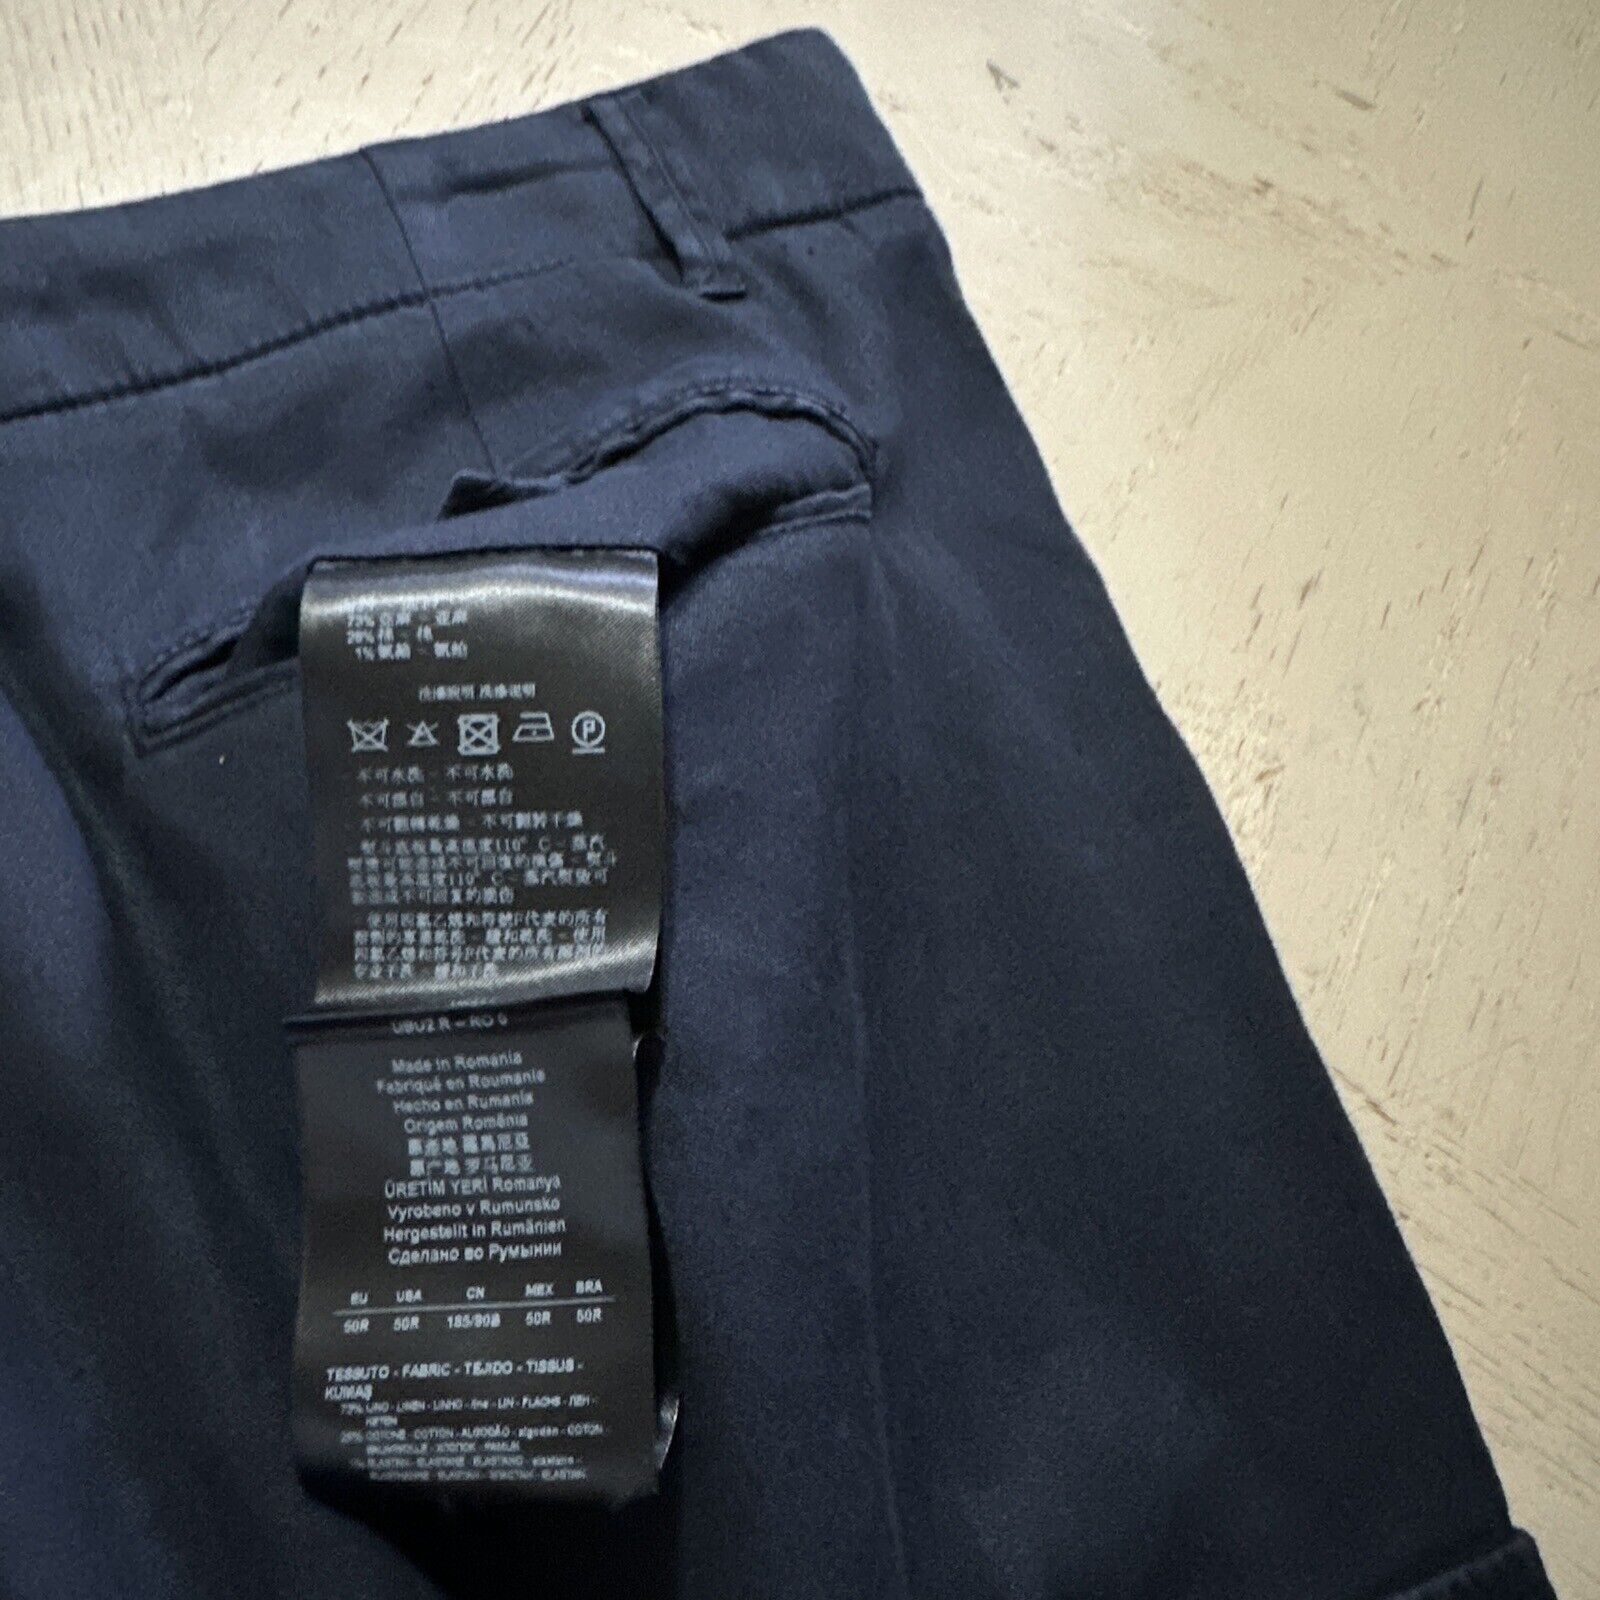 NWT $875 Giorgio Armani Men Linen/Cotton Jogging Cargo Pants Navy 34 US/50 Eu